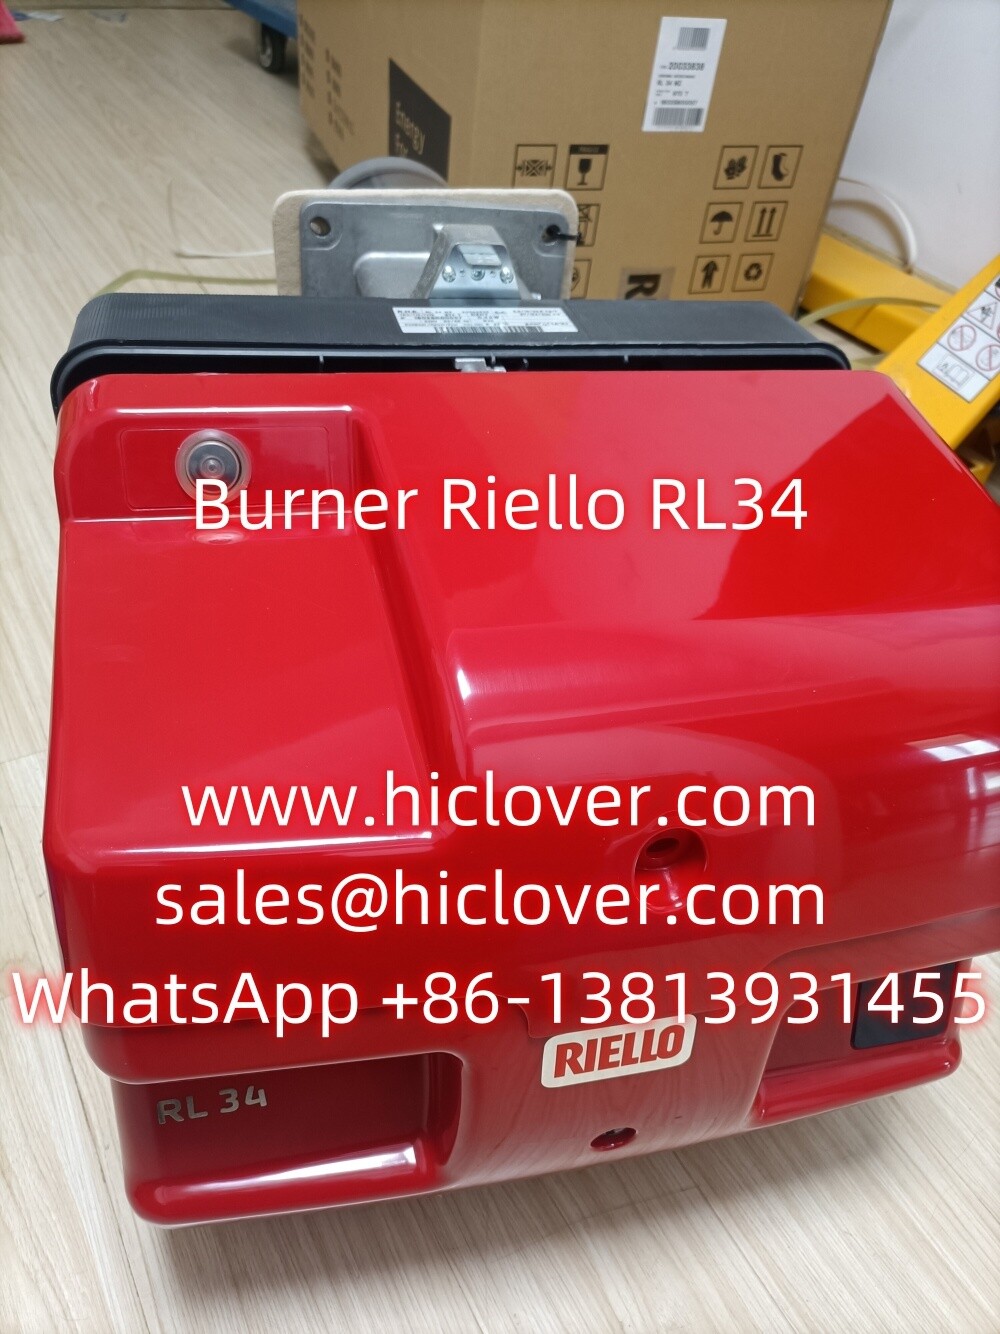 Burner Riello RL34